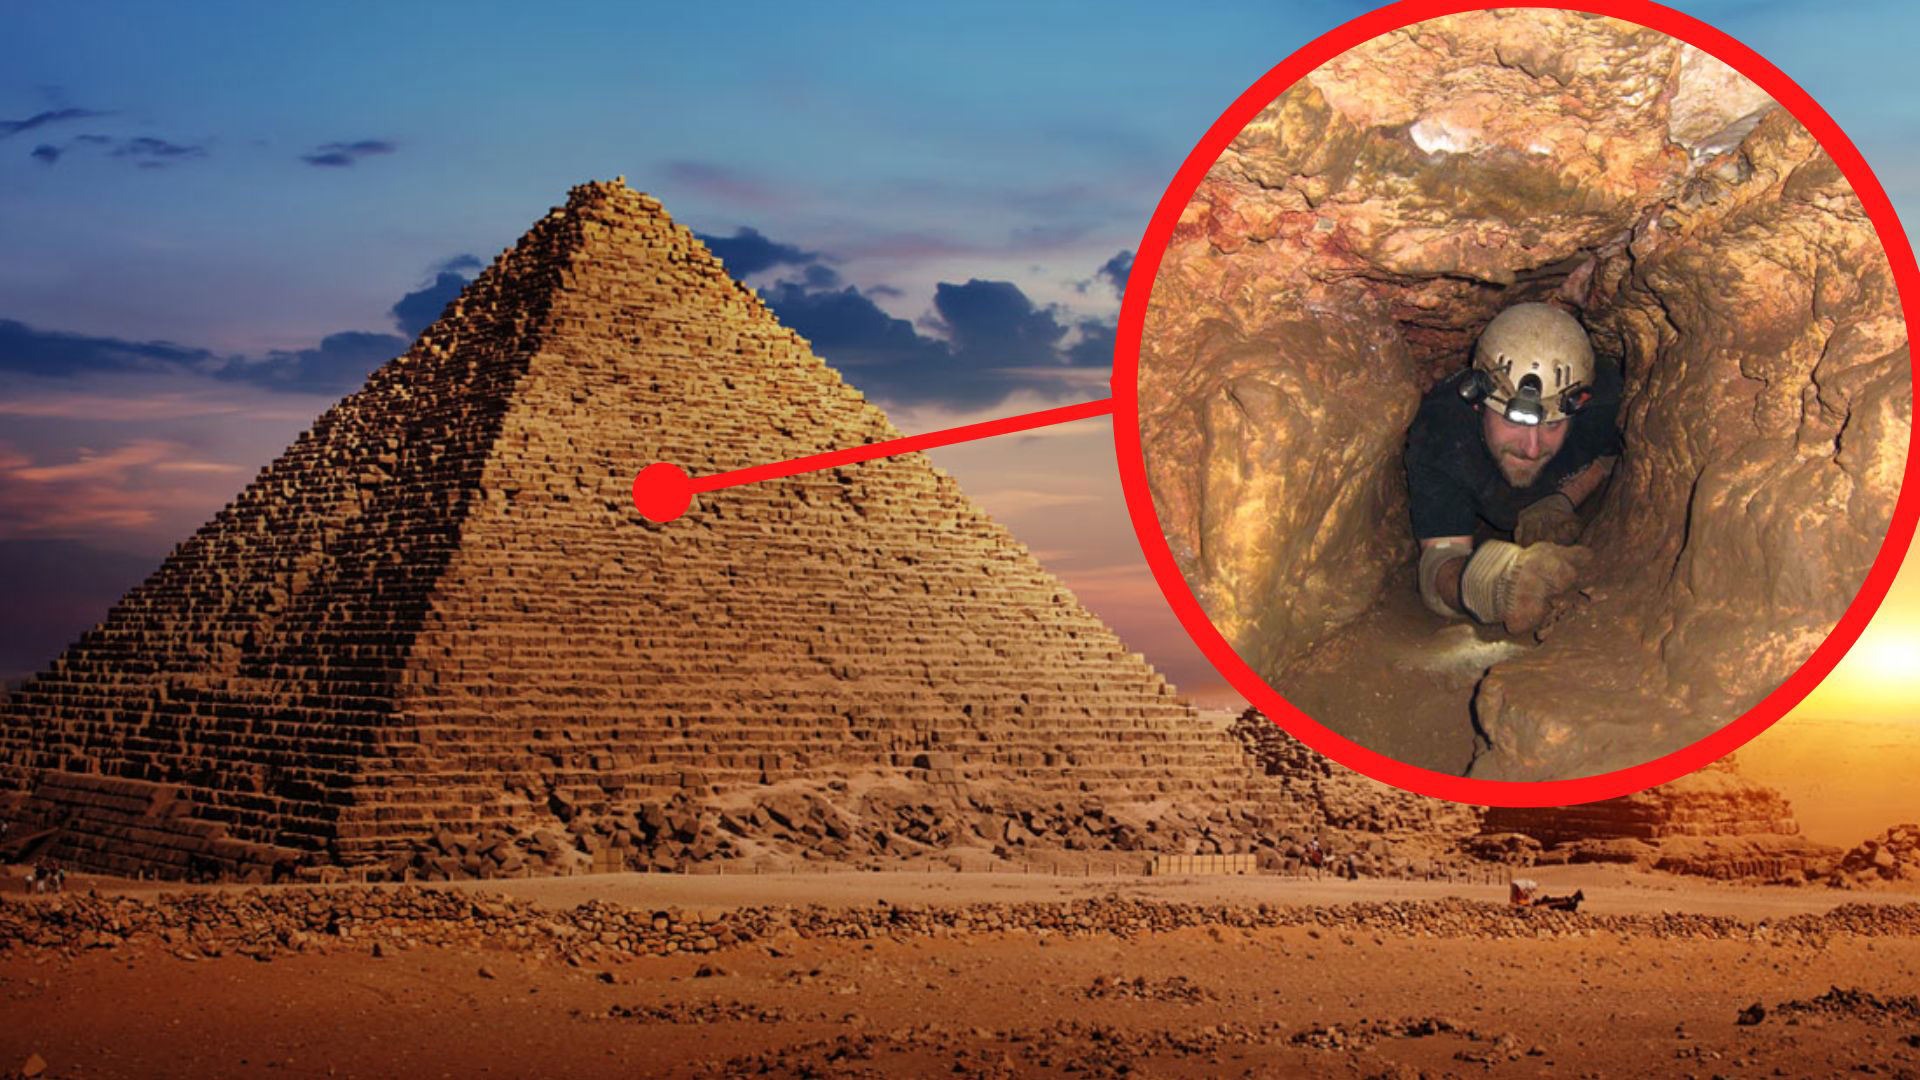 Kim tự tháp đầu tiên ở Ai Cập được xây dựng khi nào? - Ảnh 2.